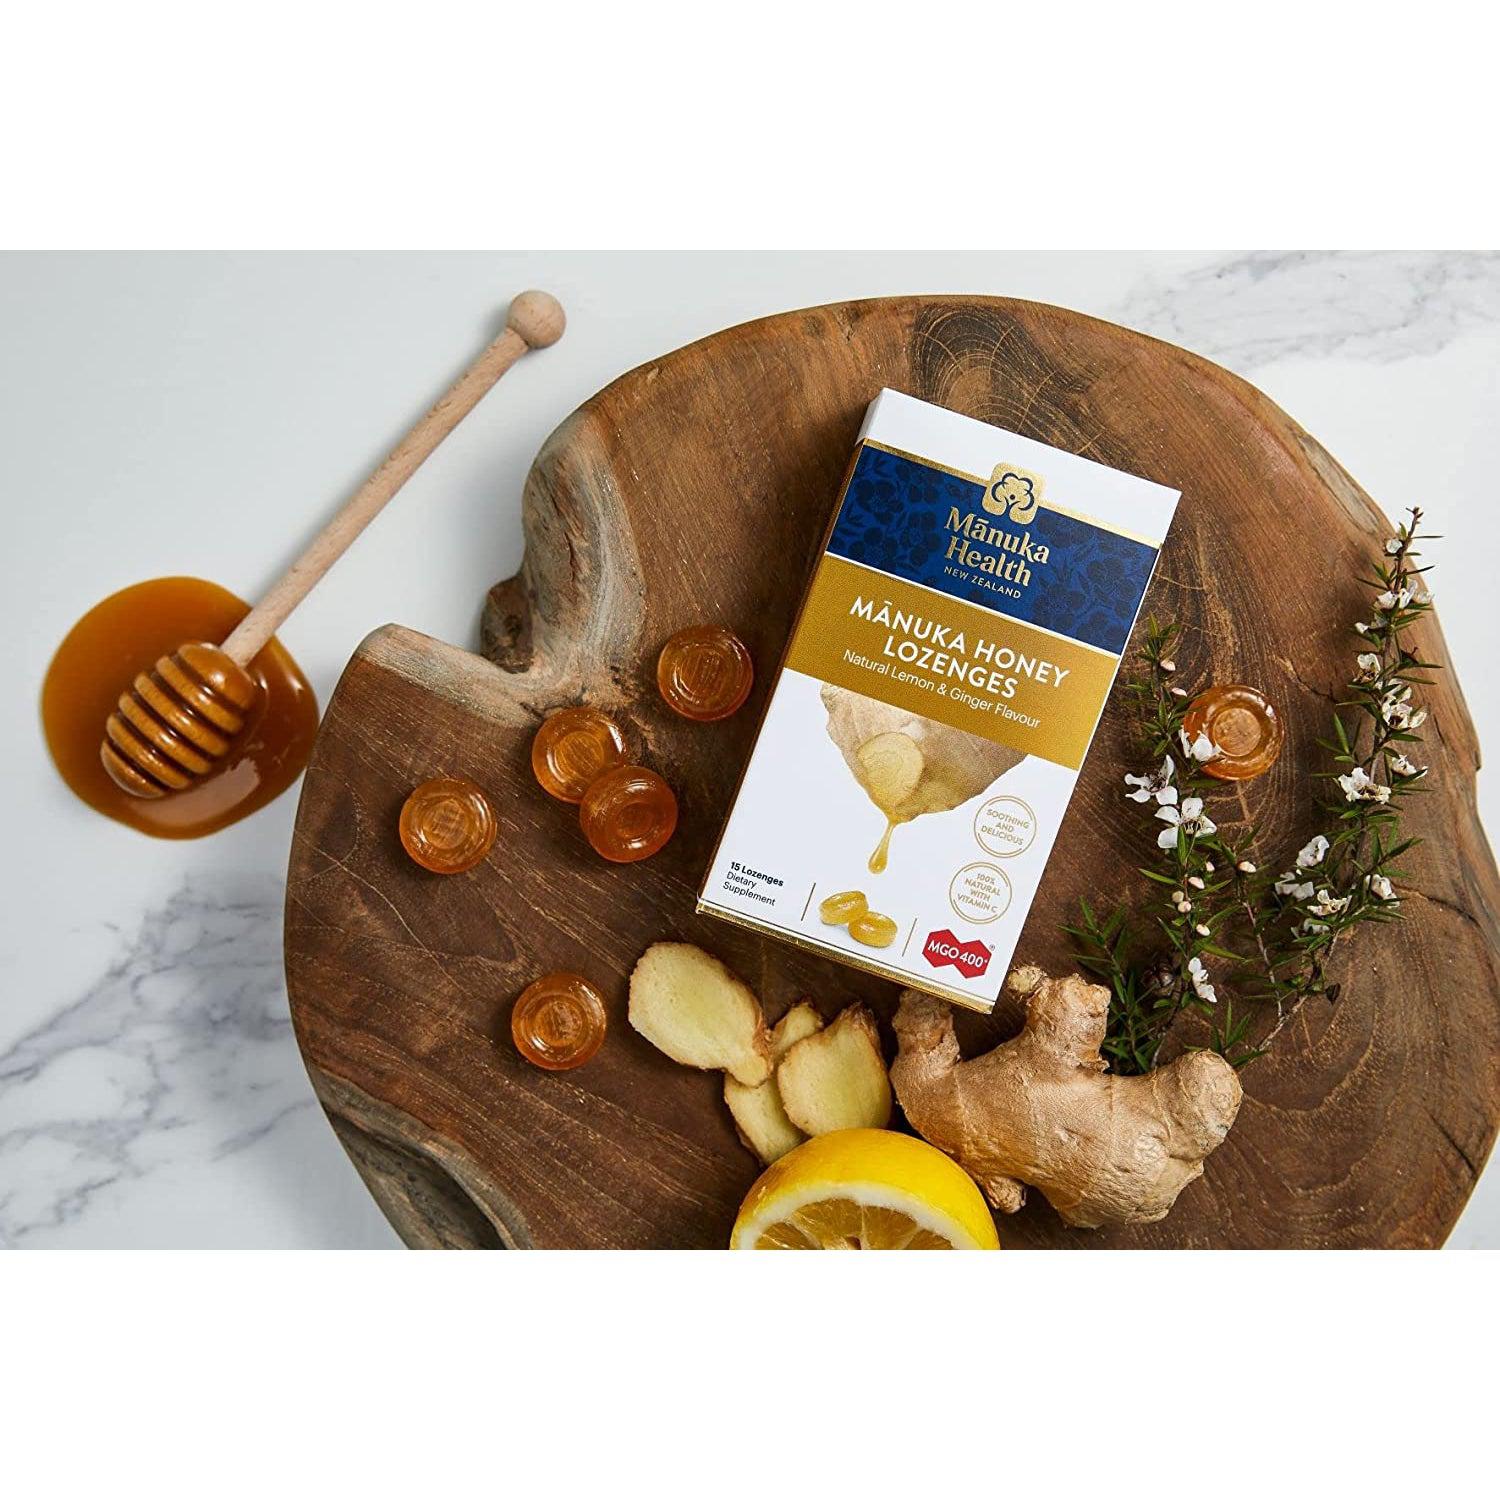 Manuka Health MGO 400+ Manuka Honey Lozenges with Lemon & Ginger New Zealand (15 pieces)